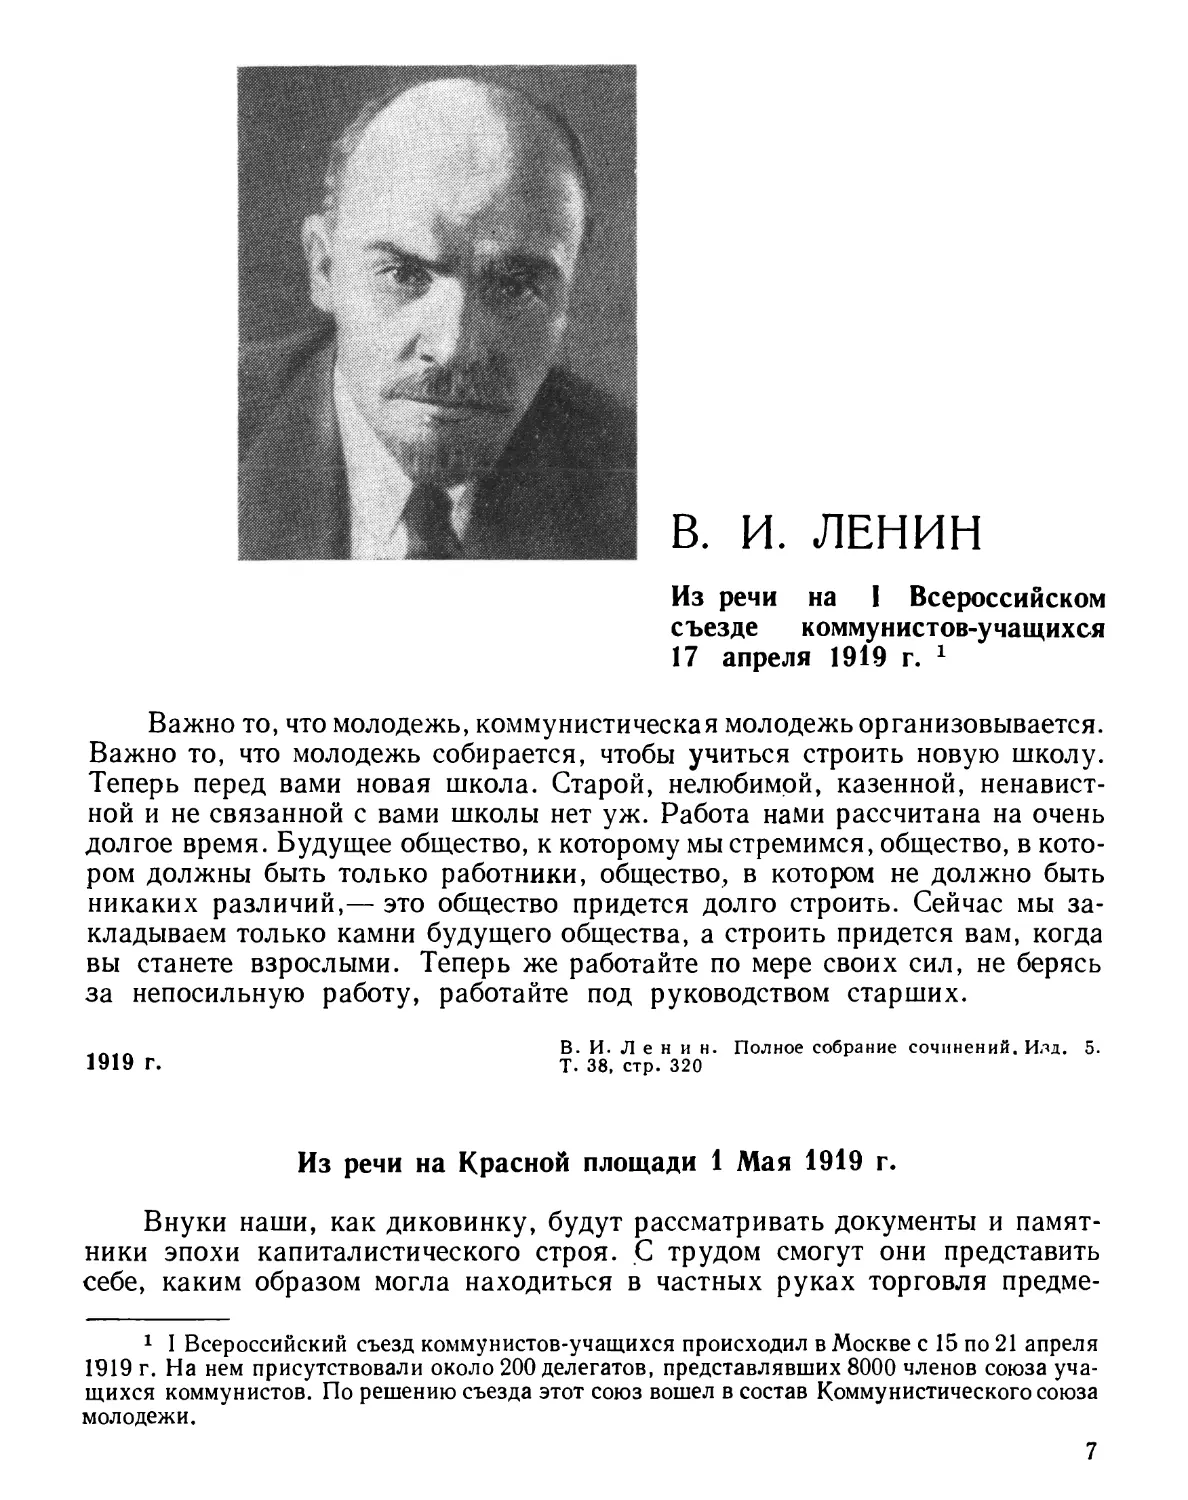 В. И. Ленин
Из речи на Красной площади 1 Мая 1919 г.